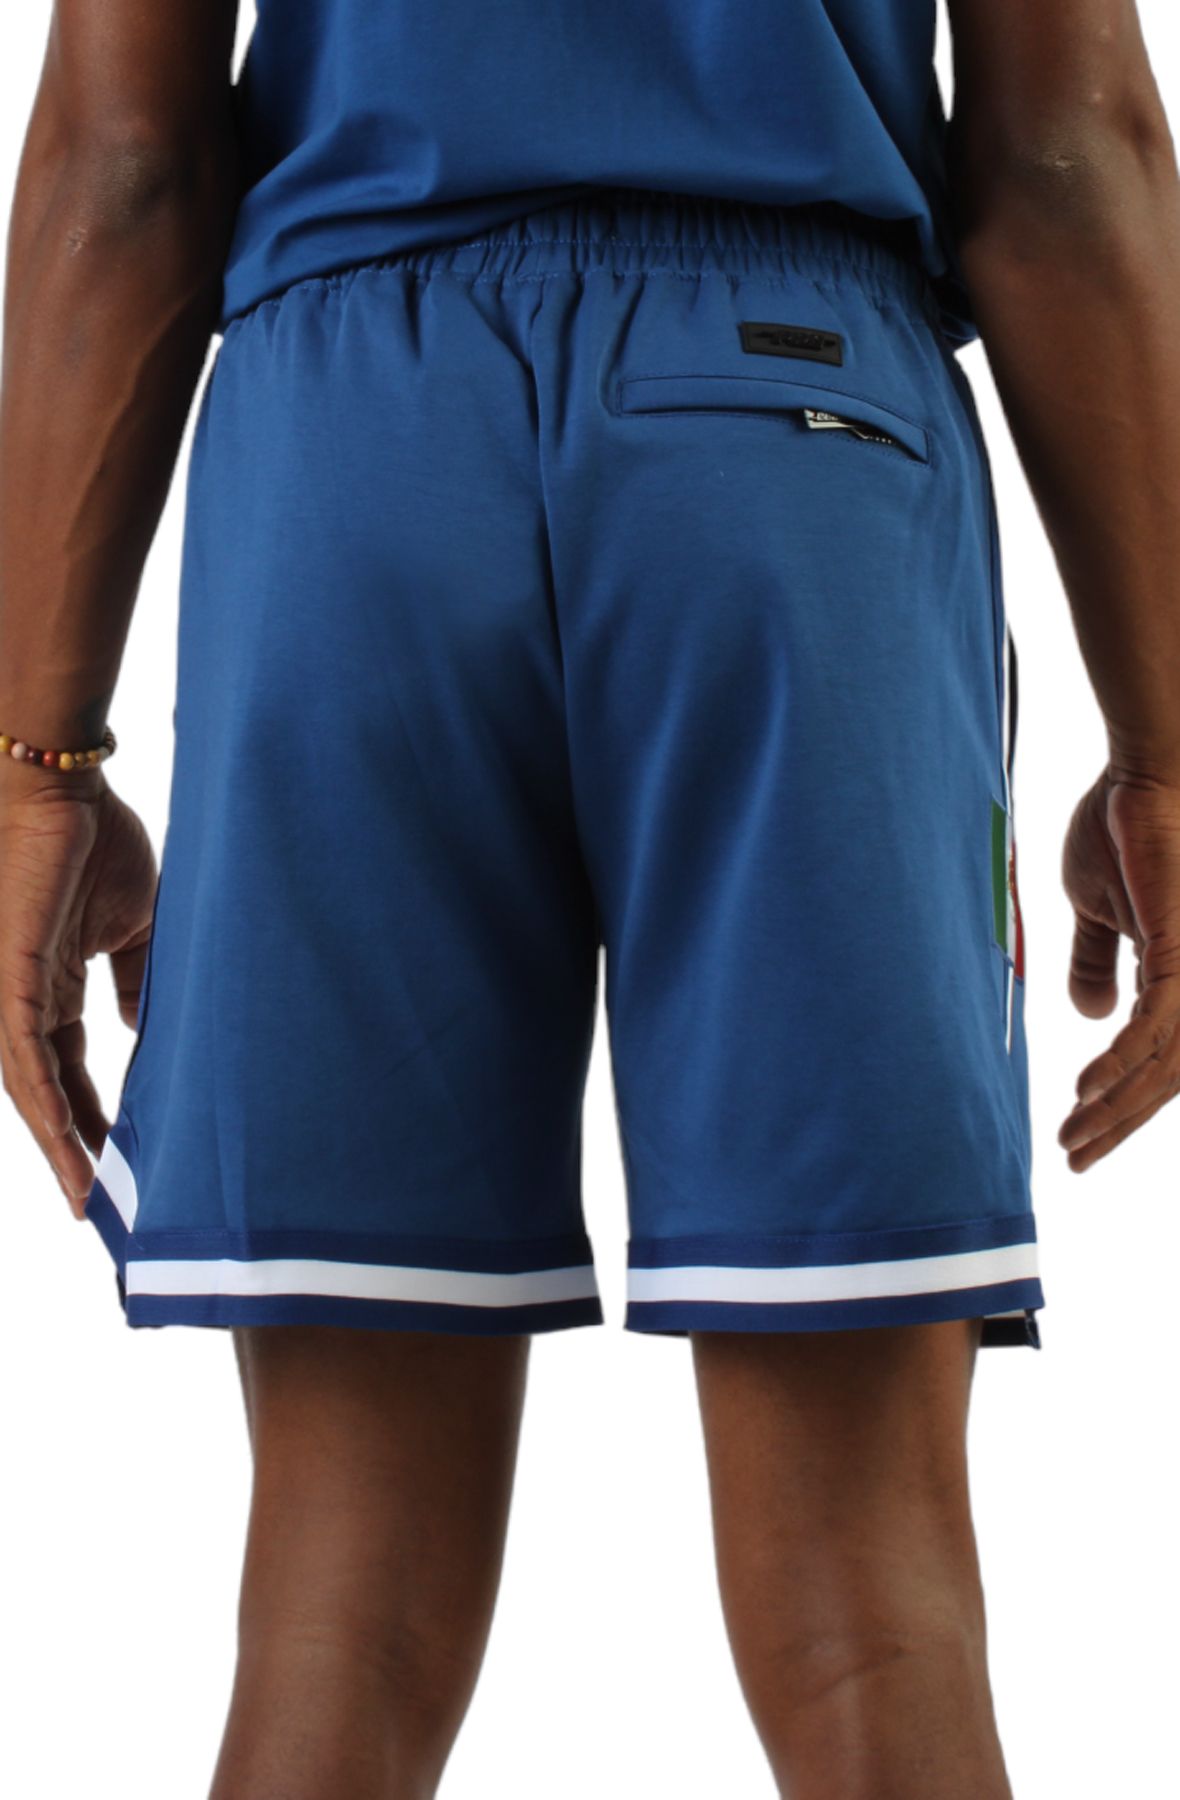 Them OG Dodger Blue Crispy shorts spotted 🌴💙 #KeepItCrisP @oic7